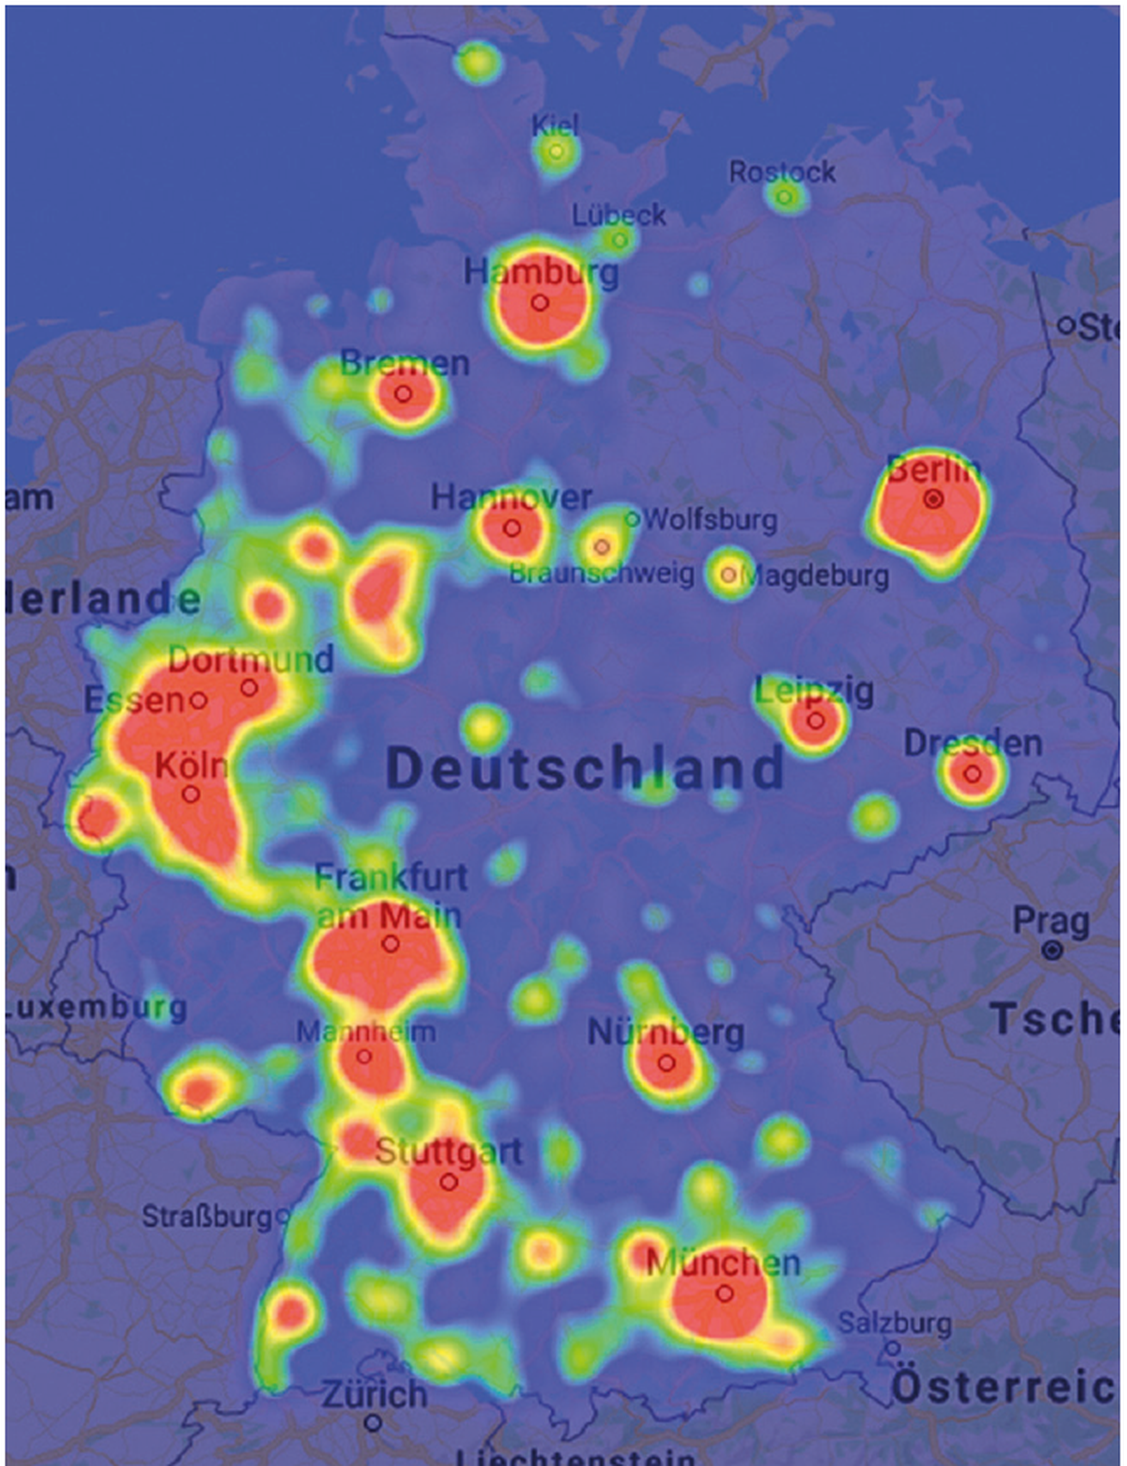 Neukundenpotenziale sind mit der Heatmap leicht ersichtlich (Bild: databyte GmbH)